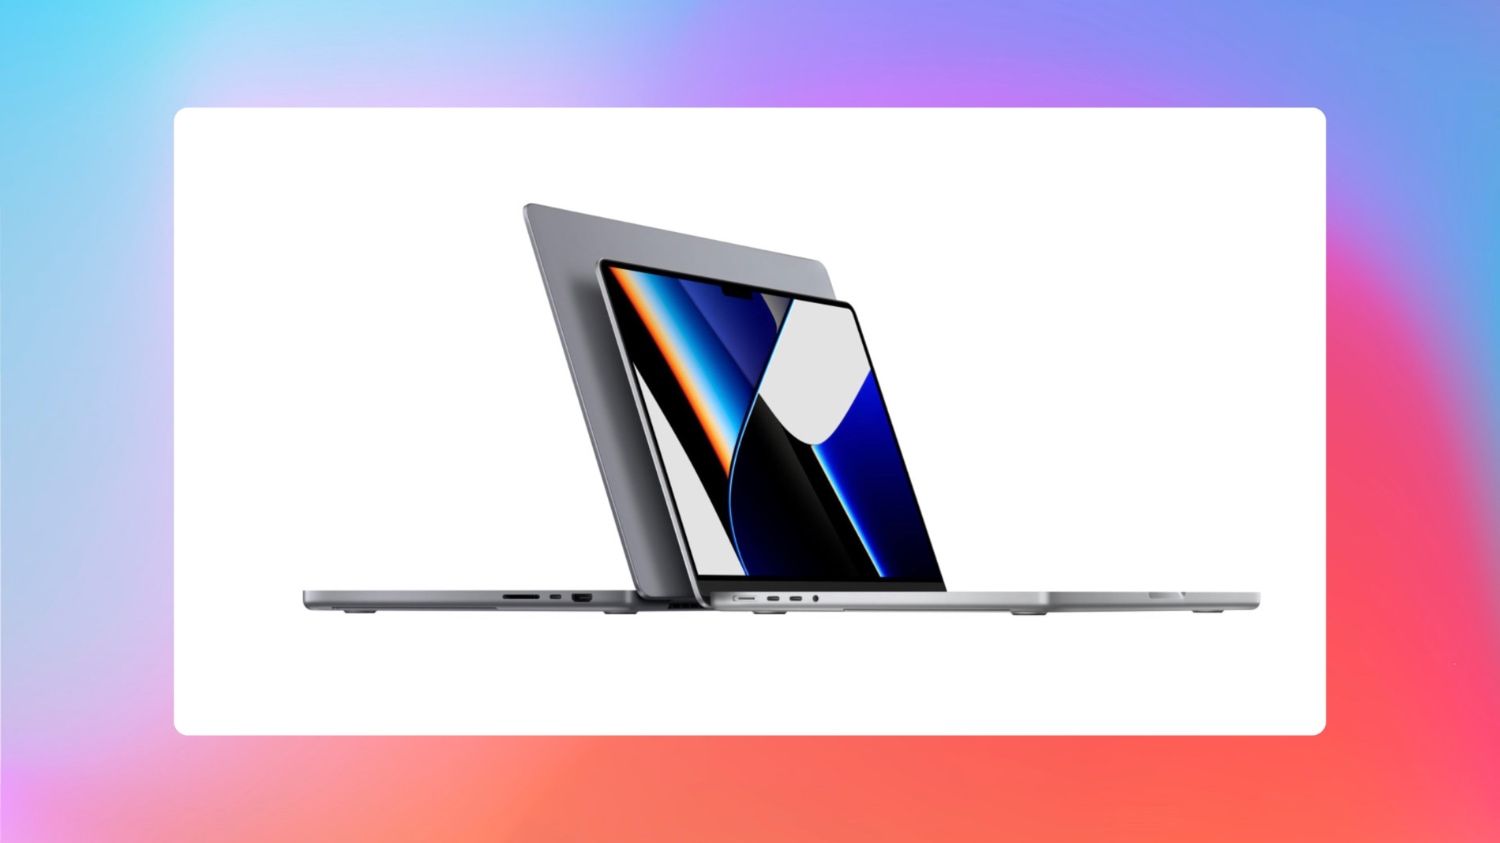 5 Best Cases for MacBook Pro to buy in 2023